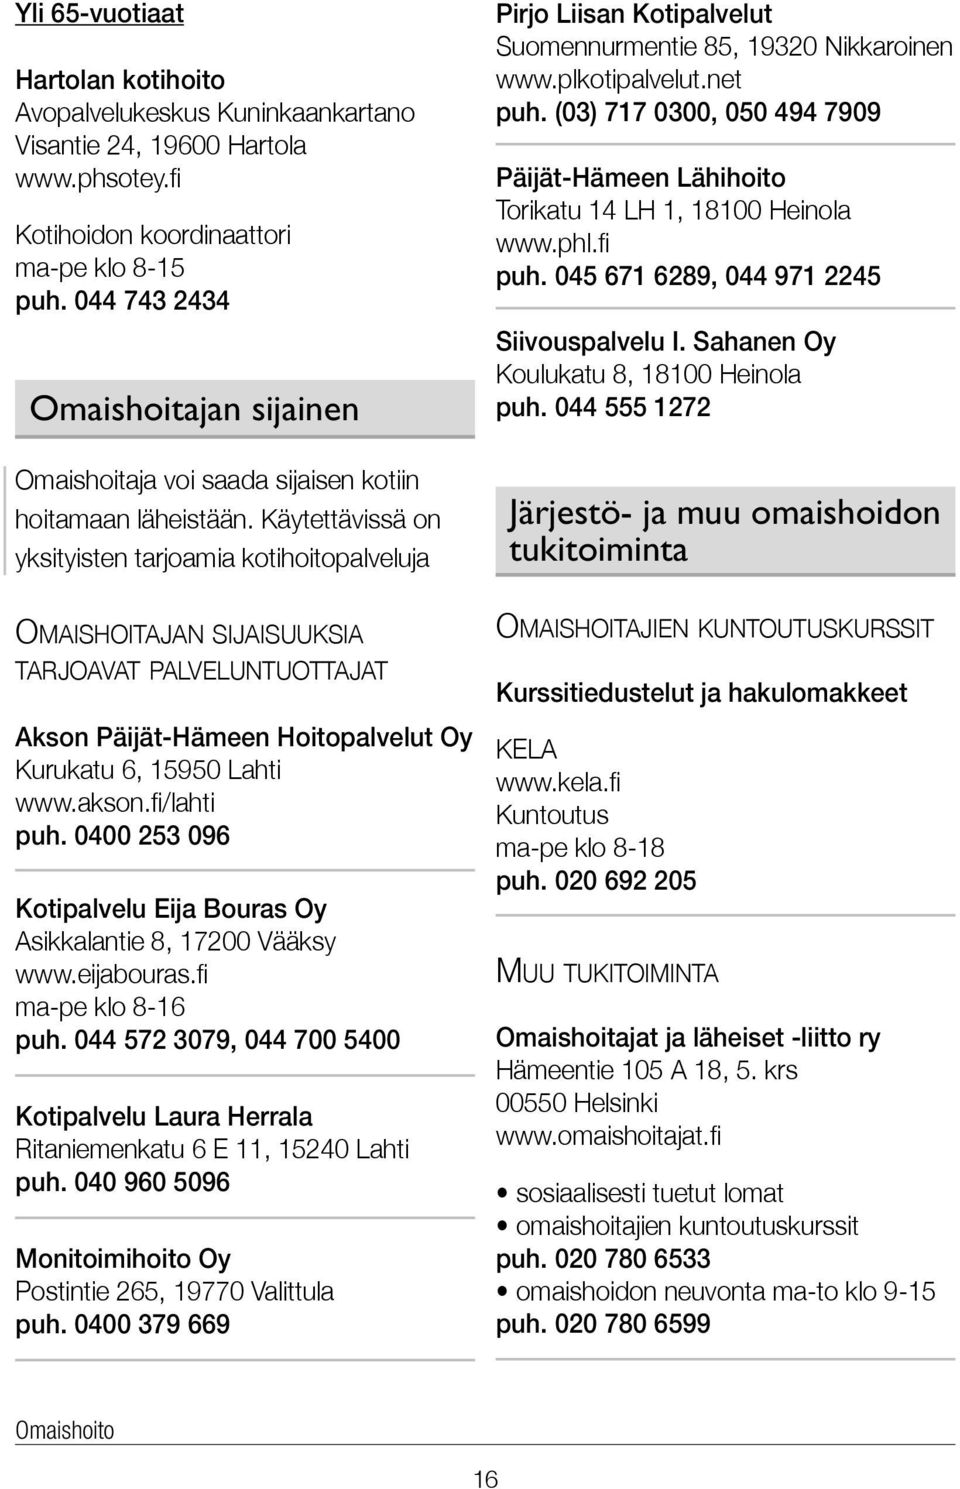 Käytettävissä on yksityisten tarjoamia kotihoitopalveluja Omaishoitajan sijaisuuksia tarjoavat palveluntuottajat Akson Päijät-Hämeen Hoitopalvelut Oy Kurukatu 6, 15950 Lahti www.akson.fi/lahti puh.